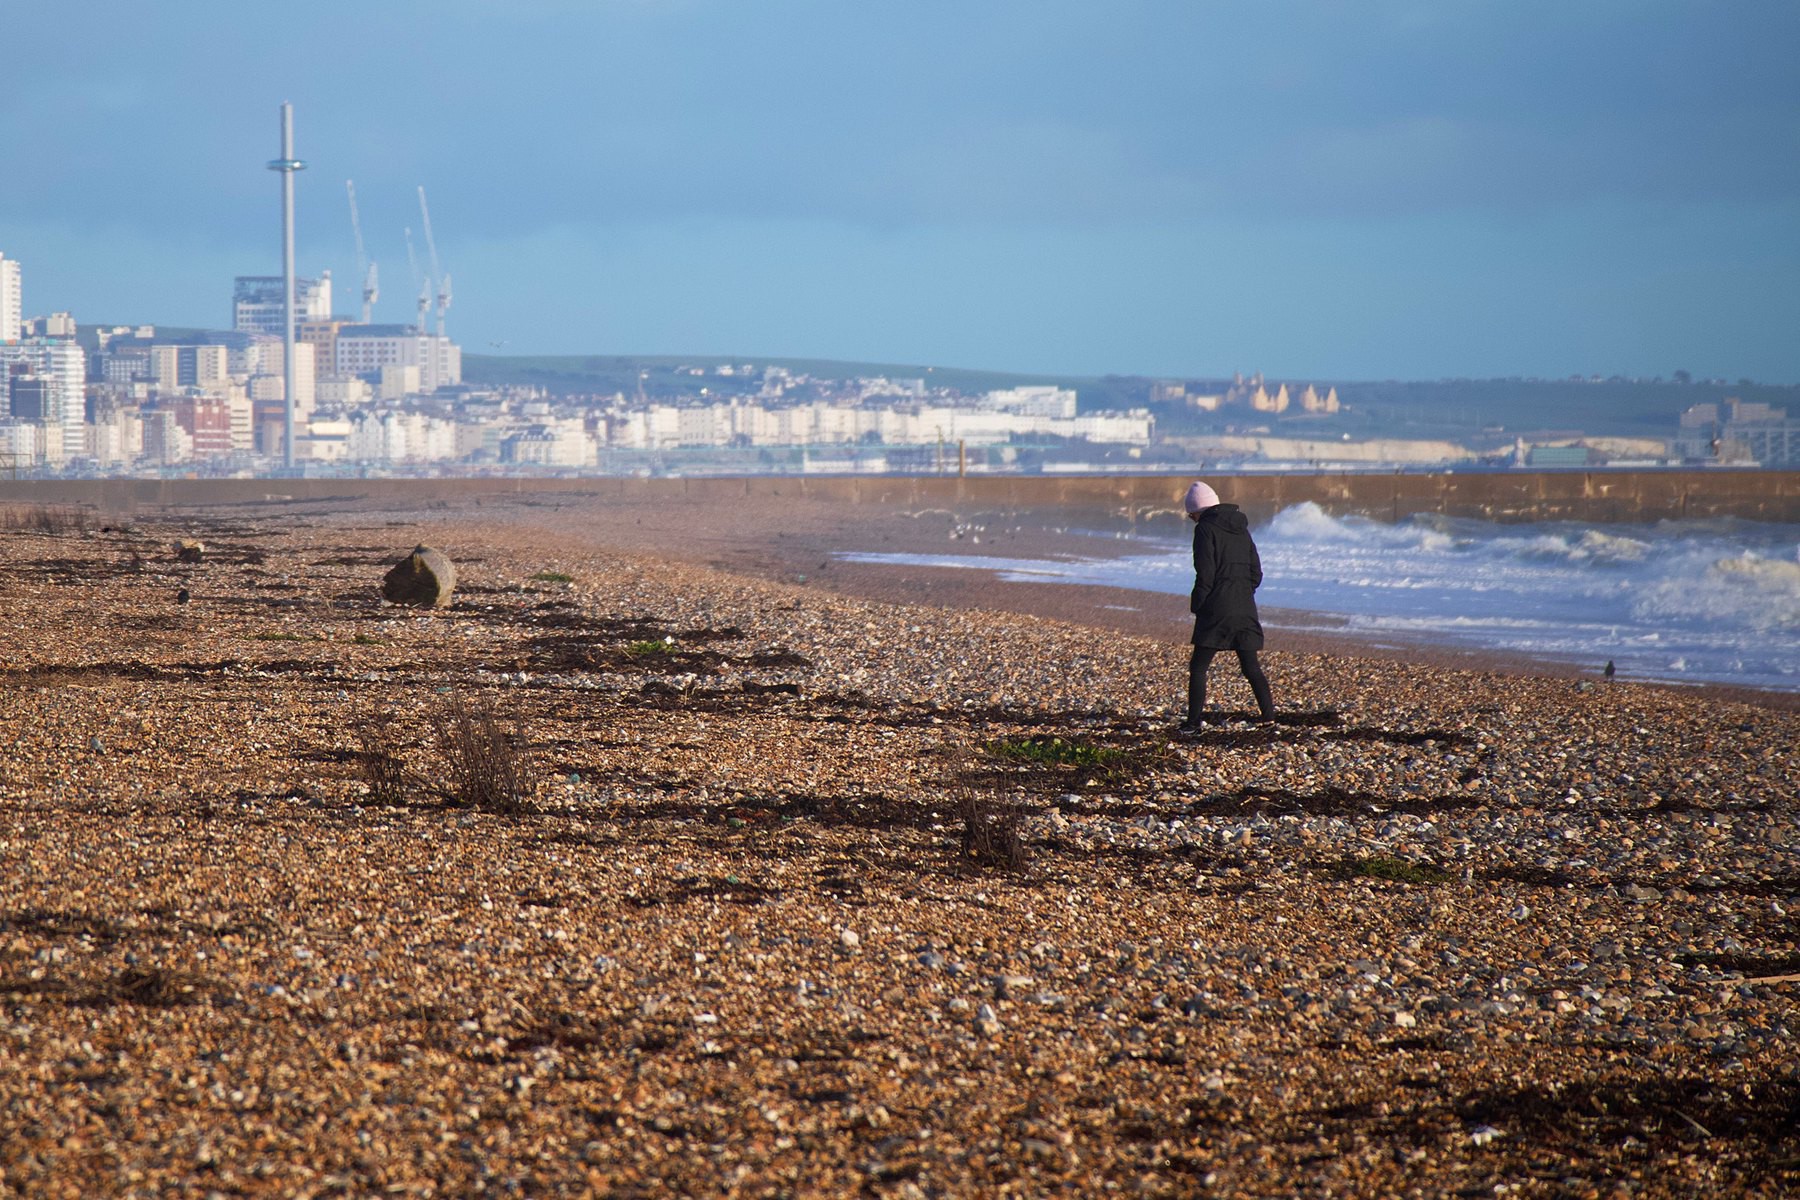 Brighton, as seen from Shoreham Beach.